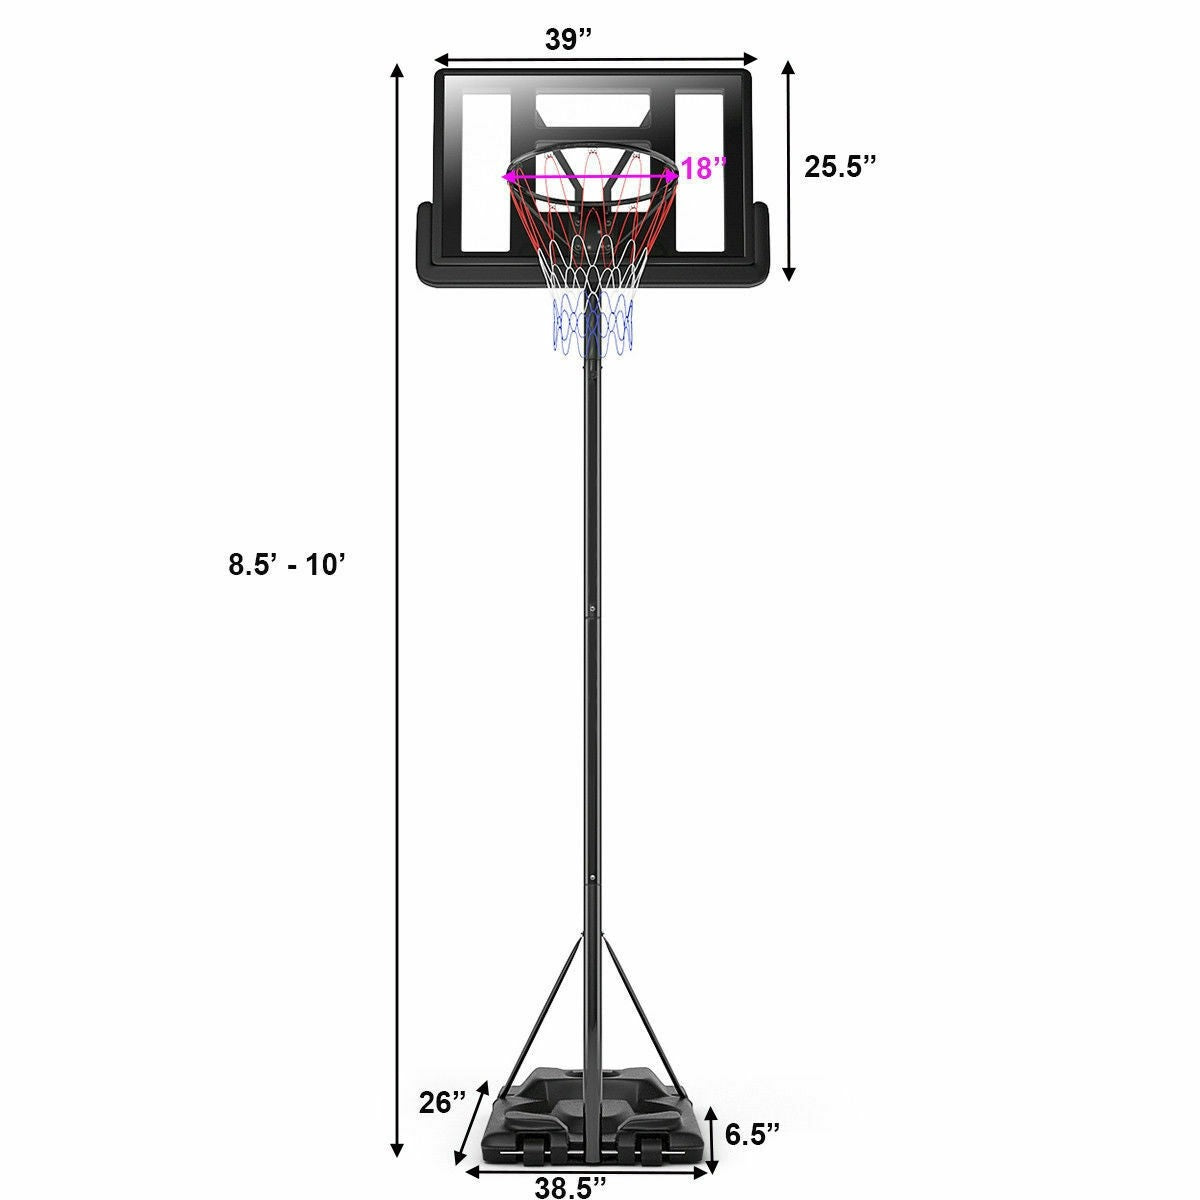 Adjustable Basketball Hoop System Black